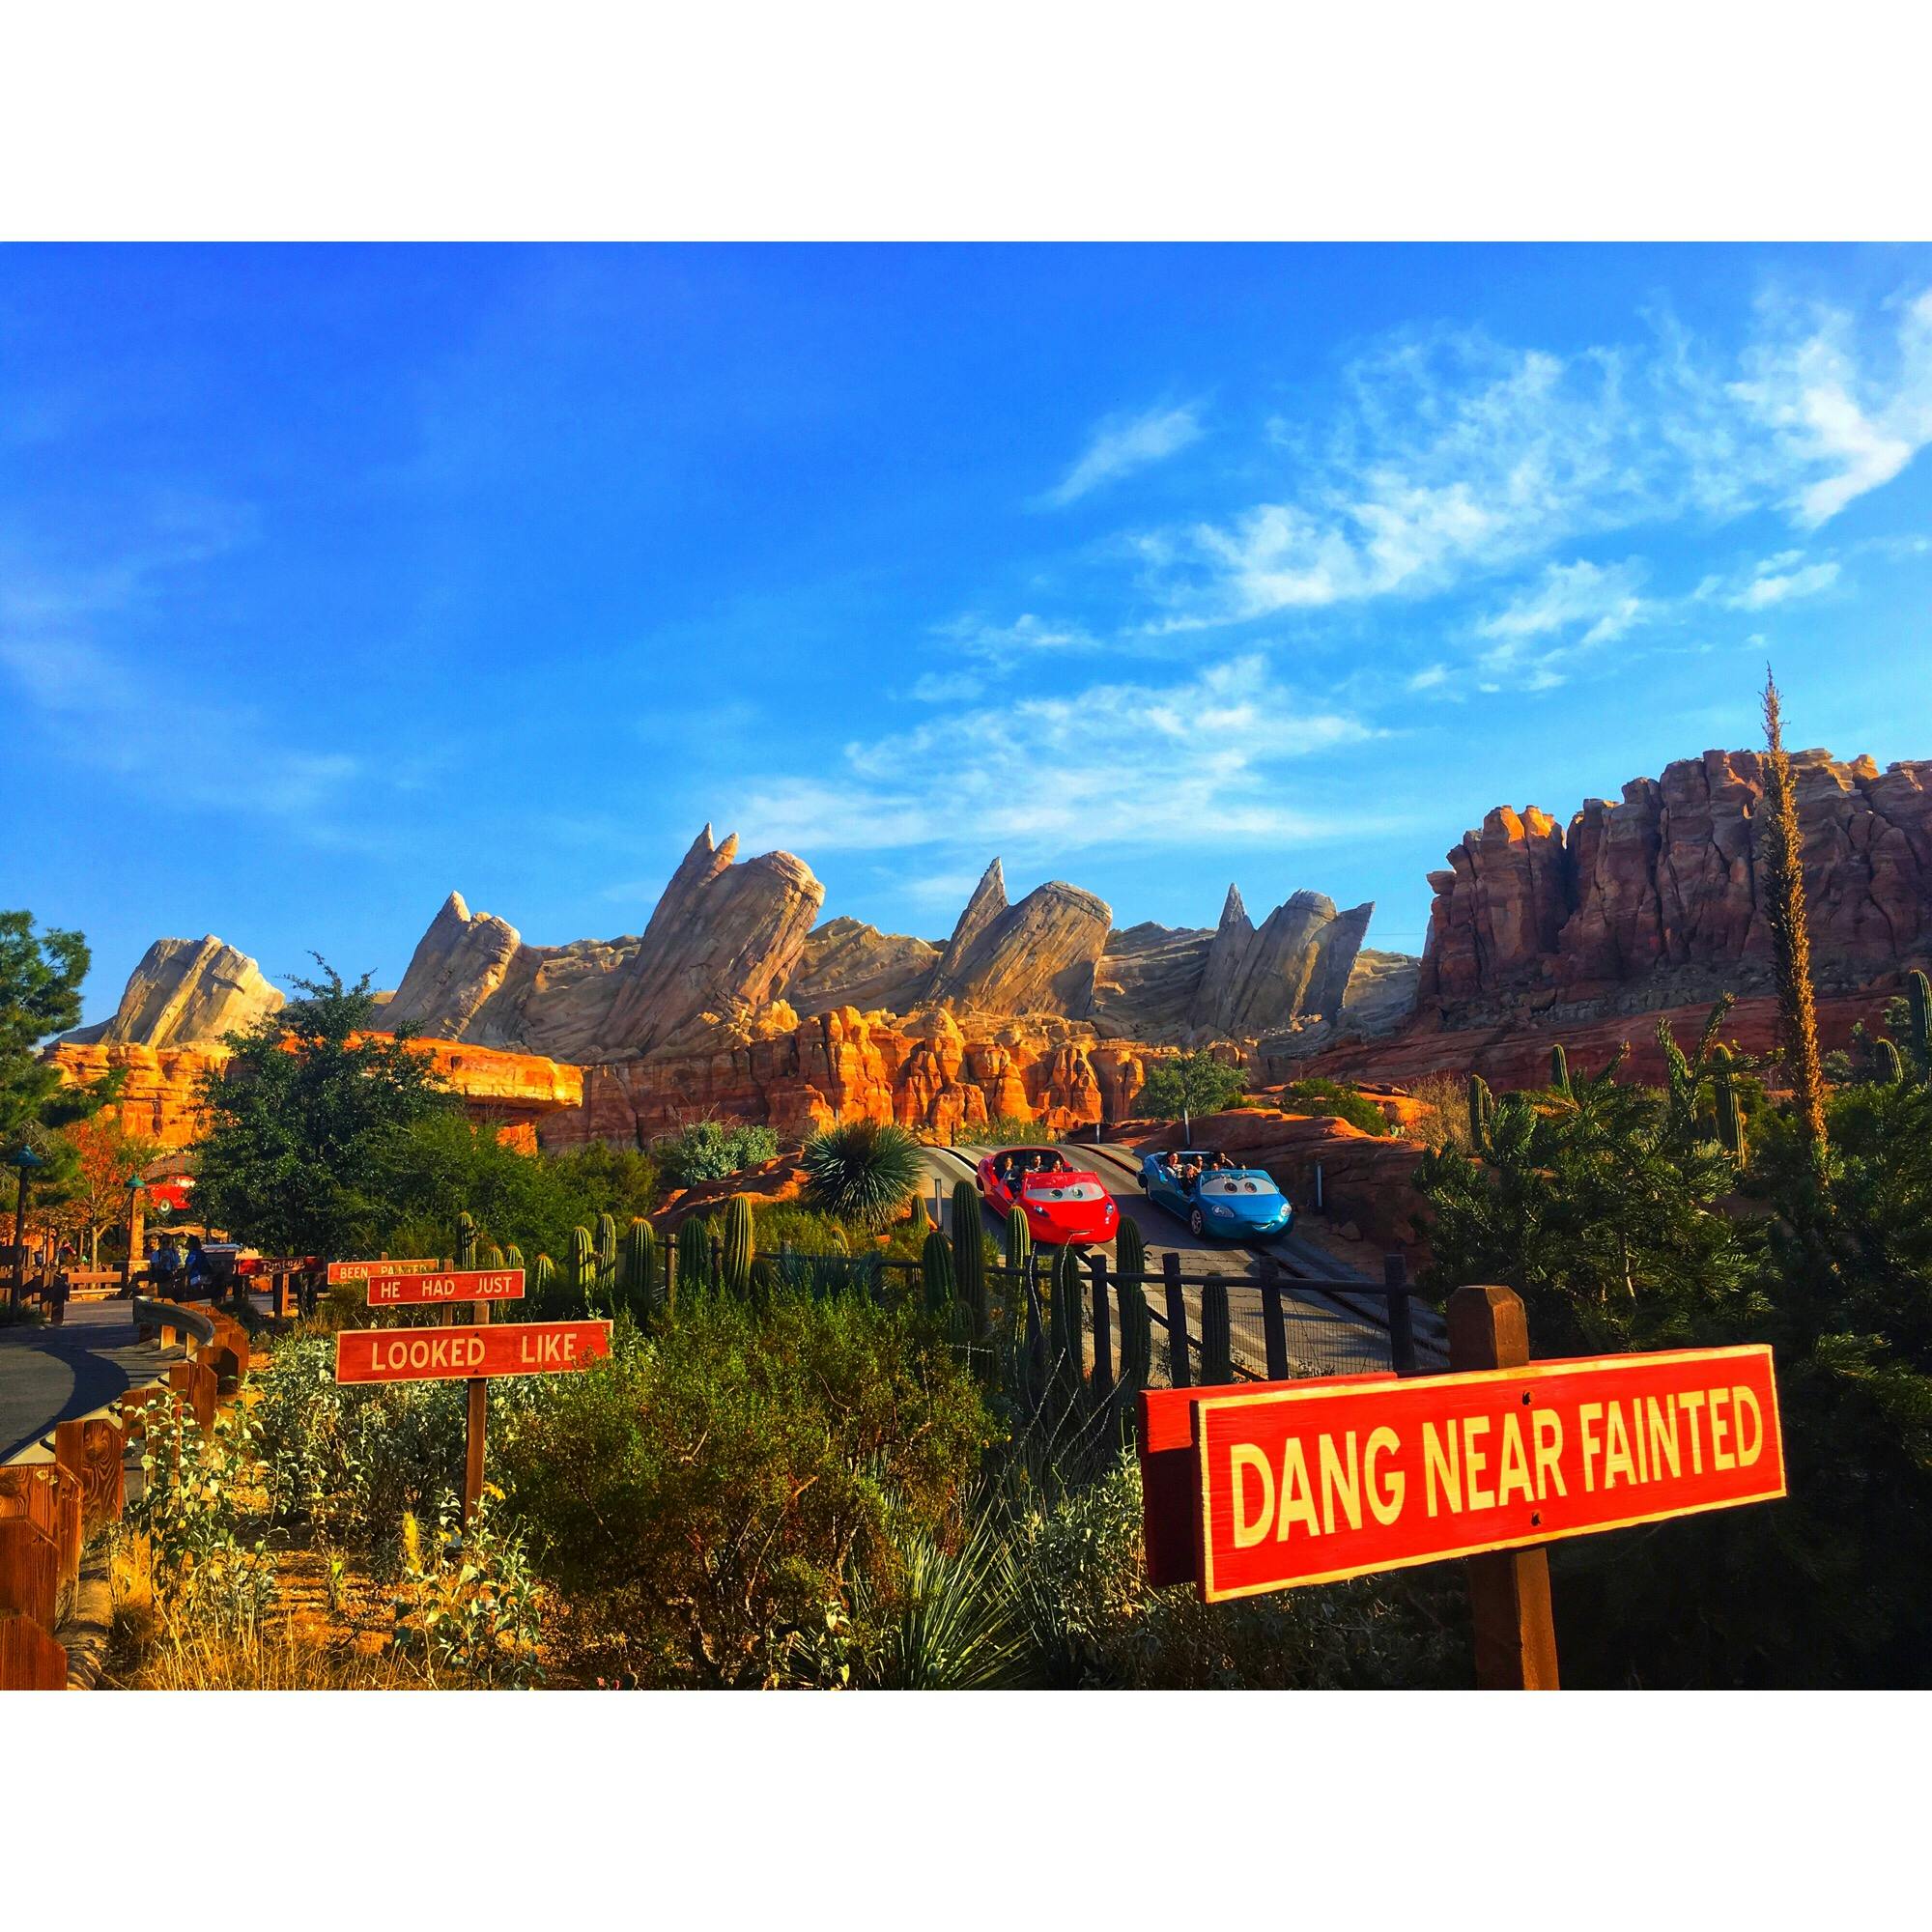 ディズニー カリフォルニア アドベンチャーパーク Disney California Adventure Park の投稿写真 感想 みどころ カーズランド トリップノート